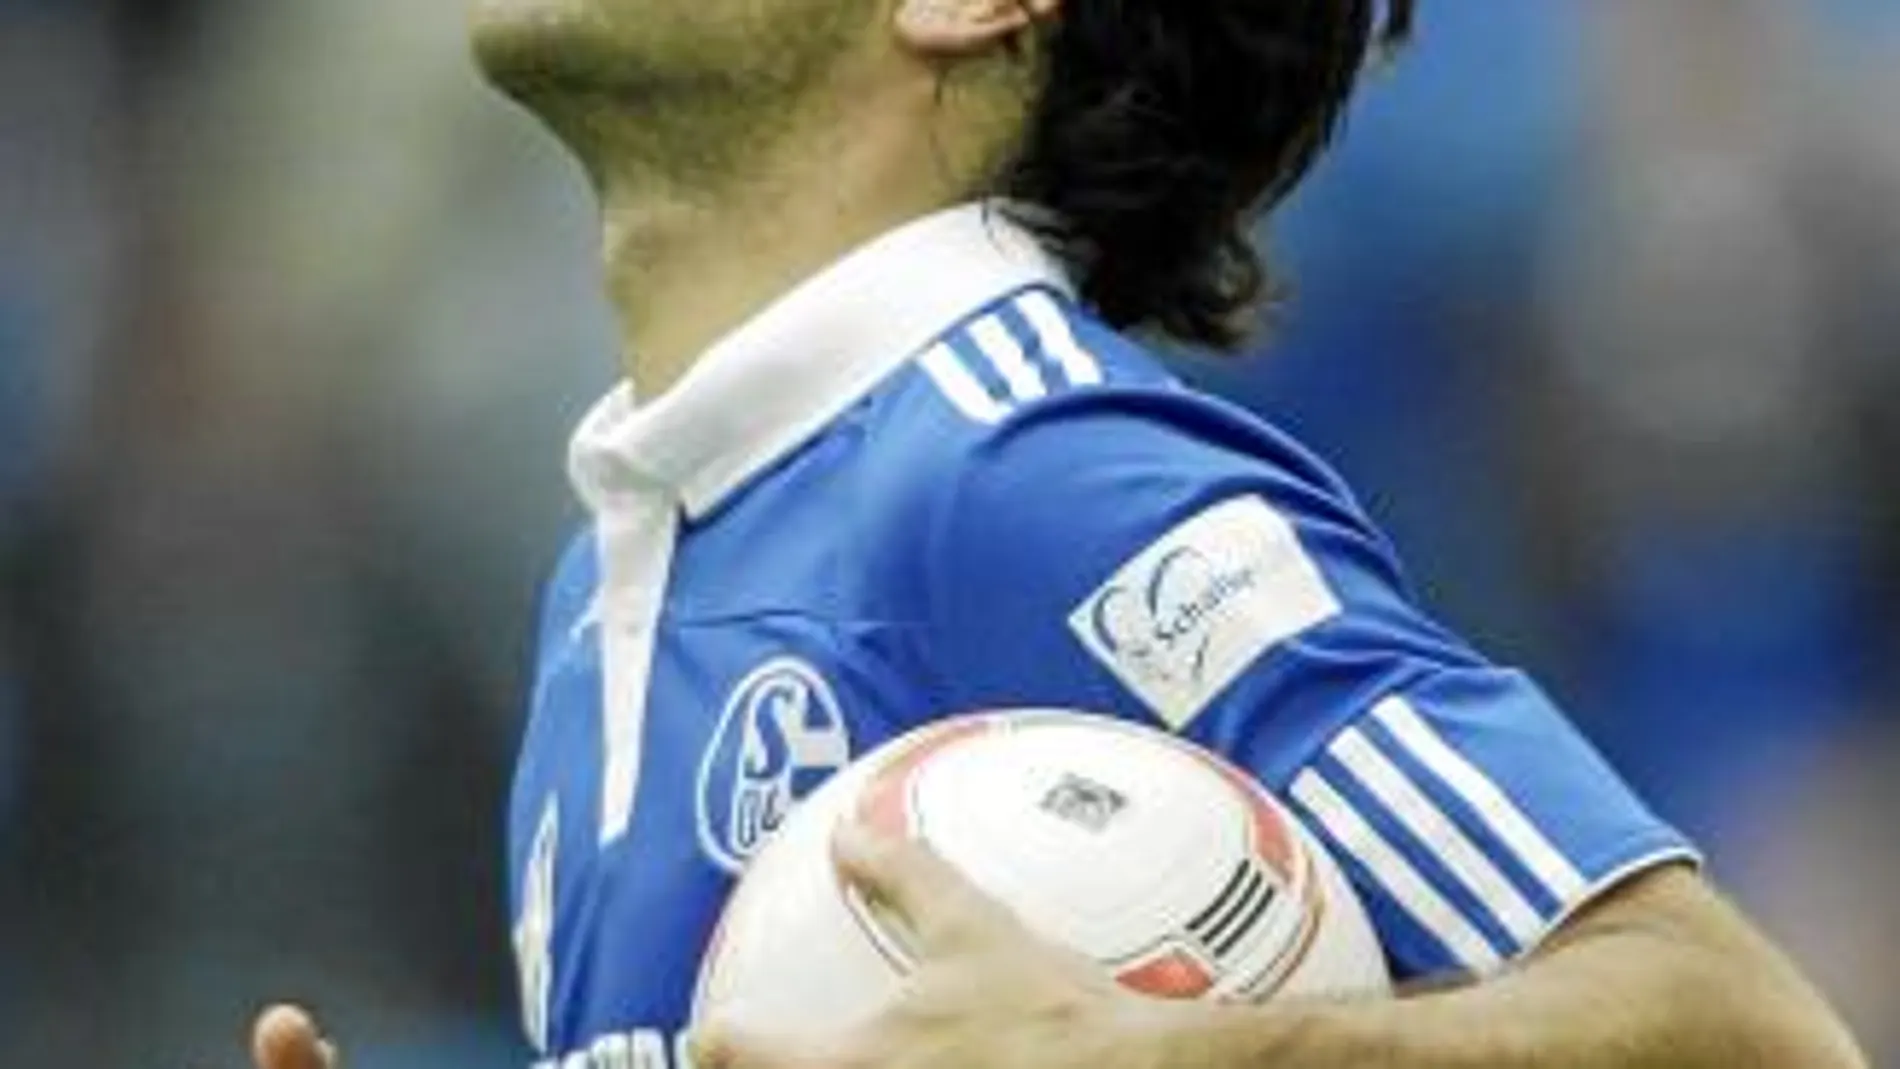 Raúl primer gol oficial en el empate del Schalke